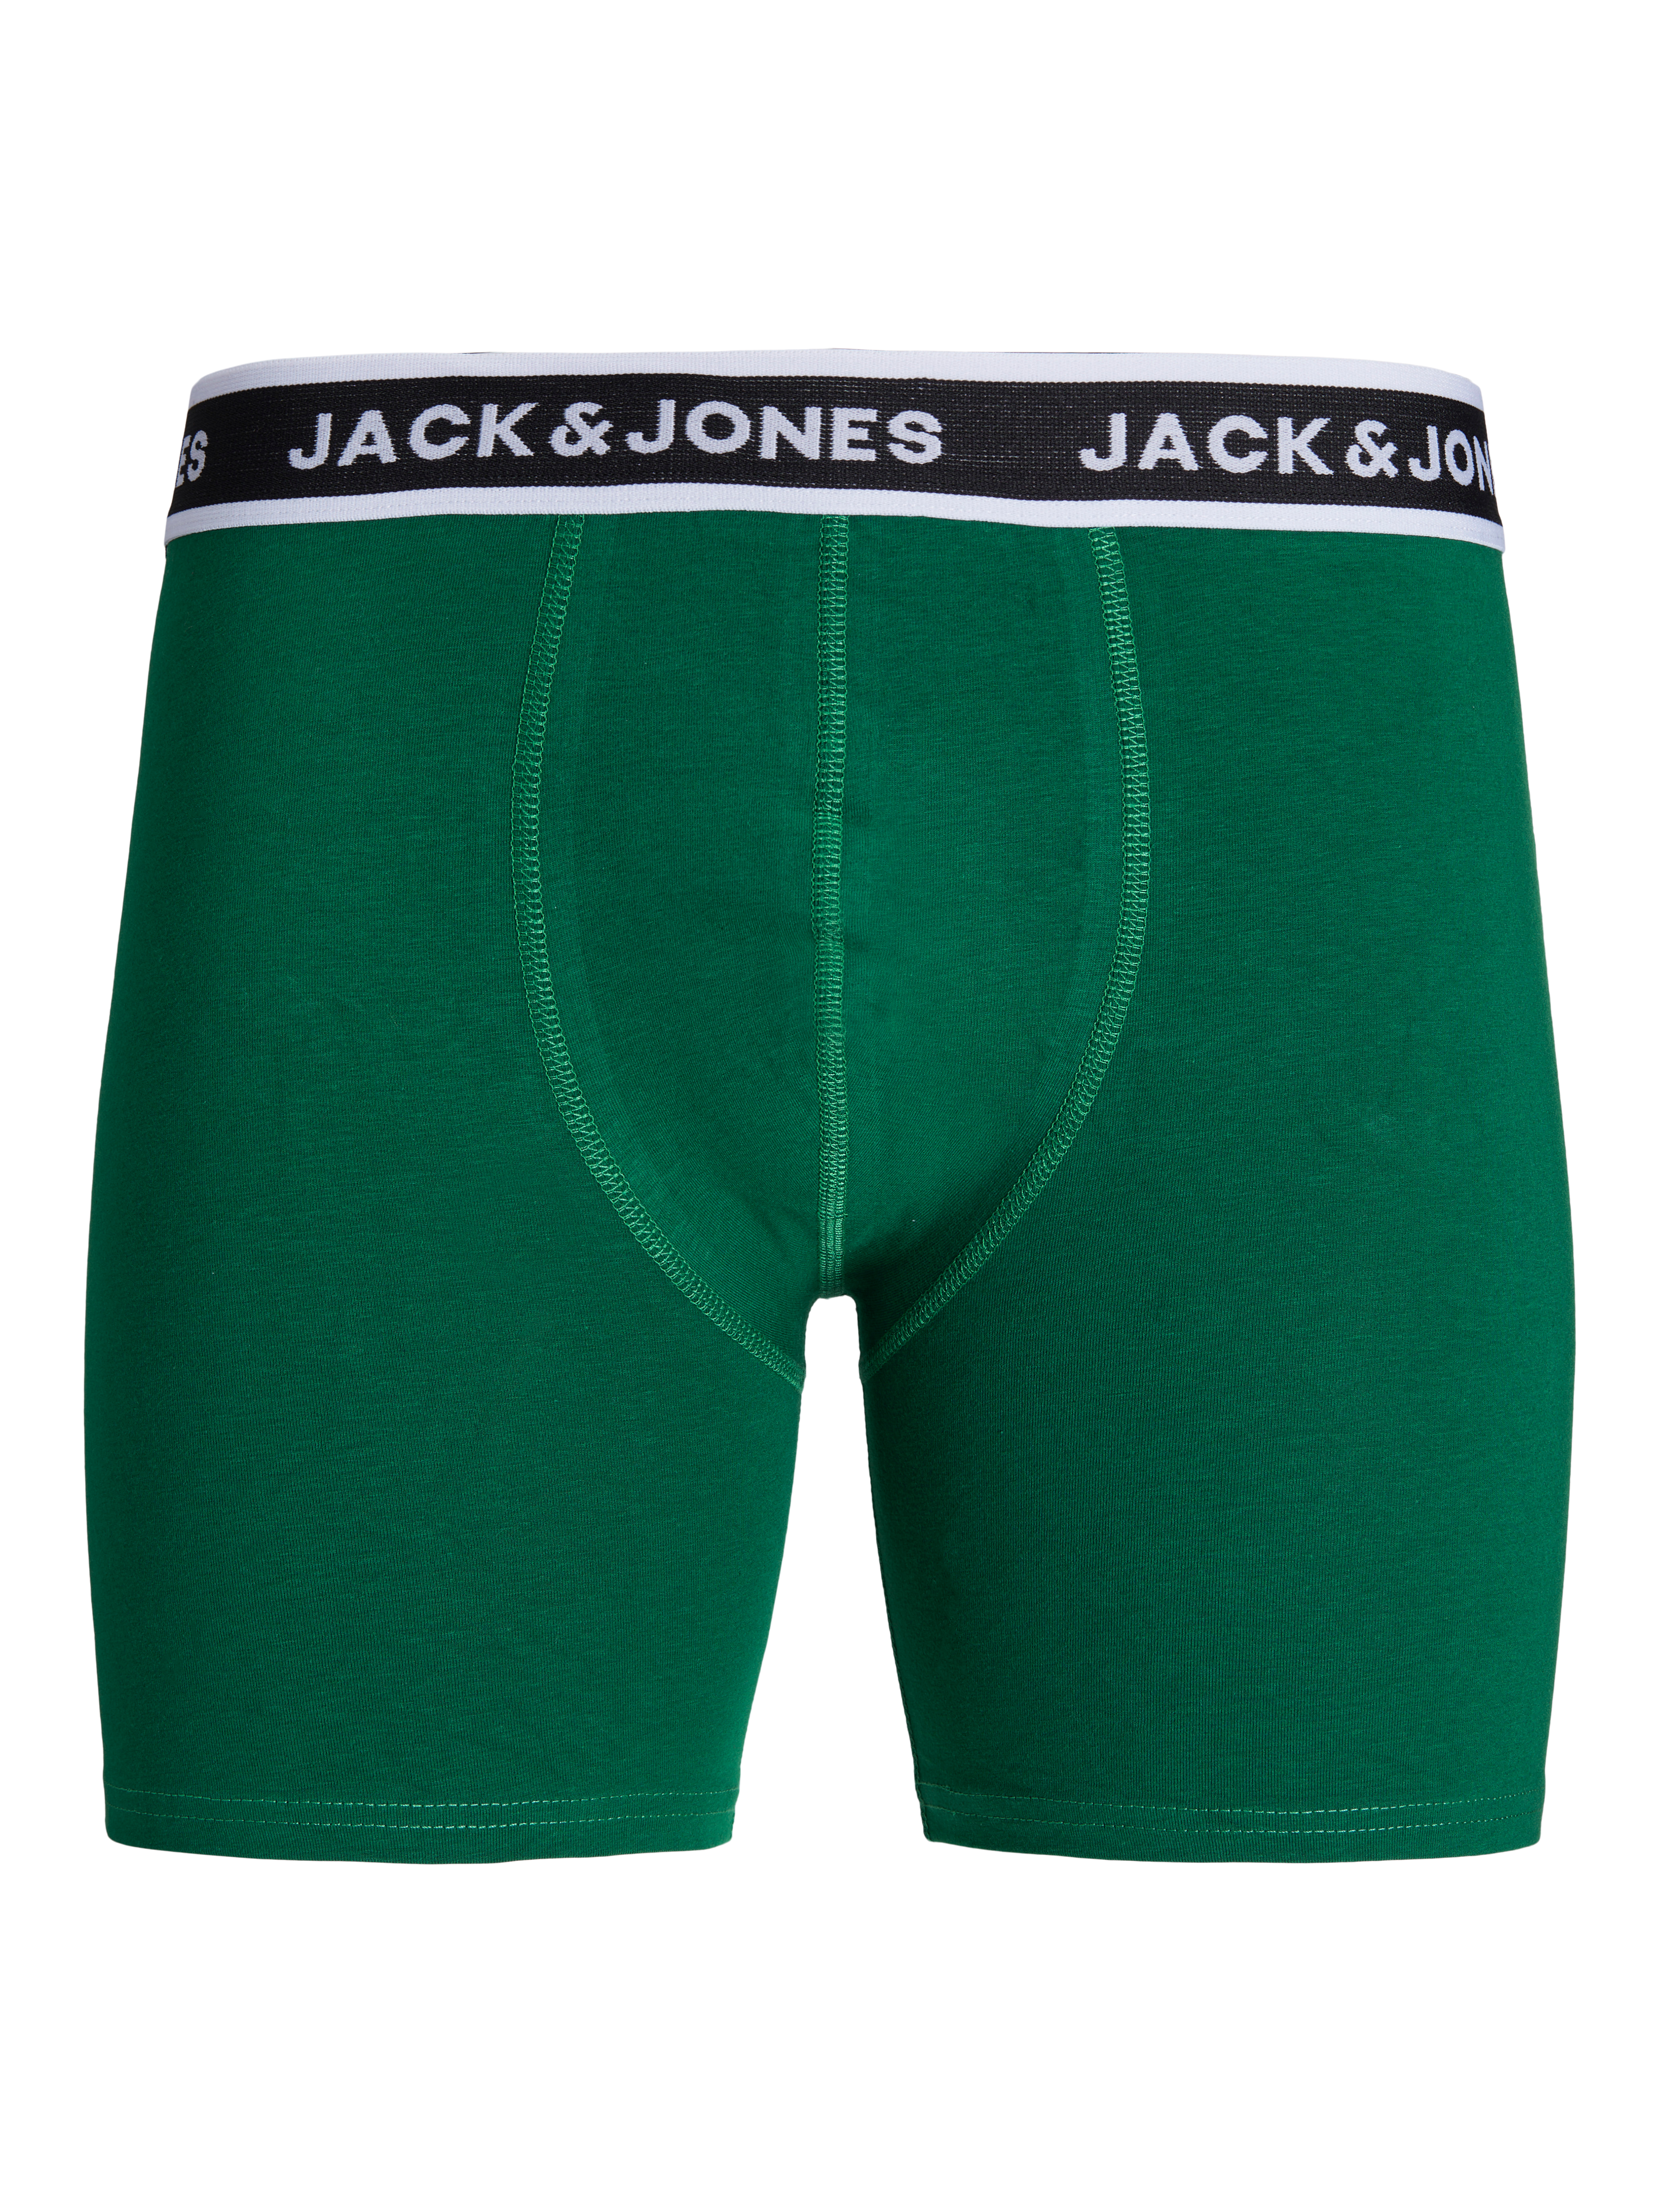 Boxers | Jack & Jones®